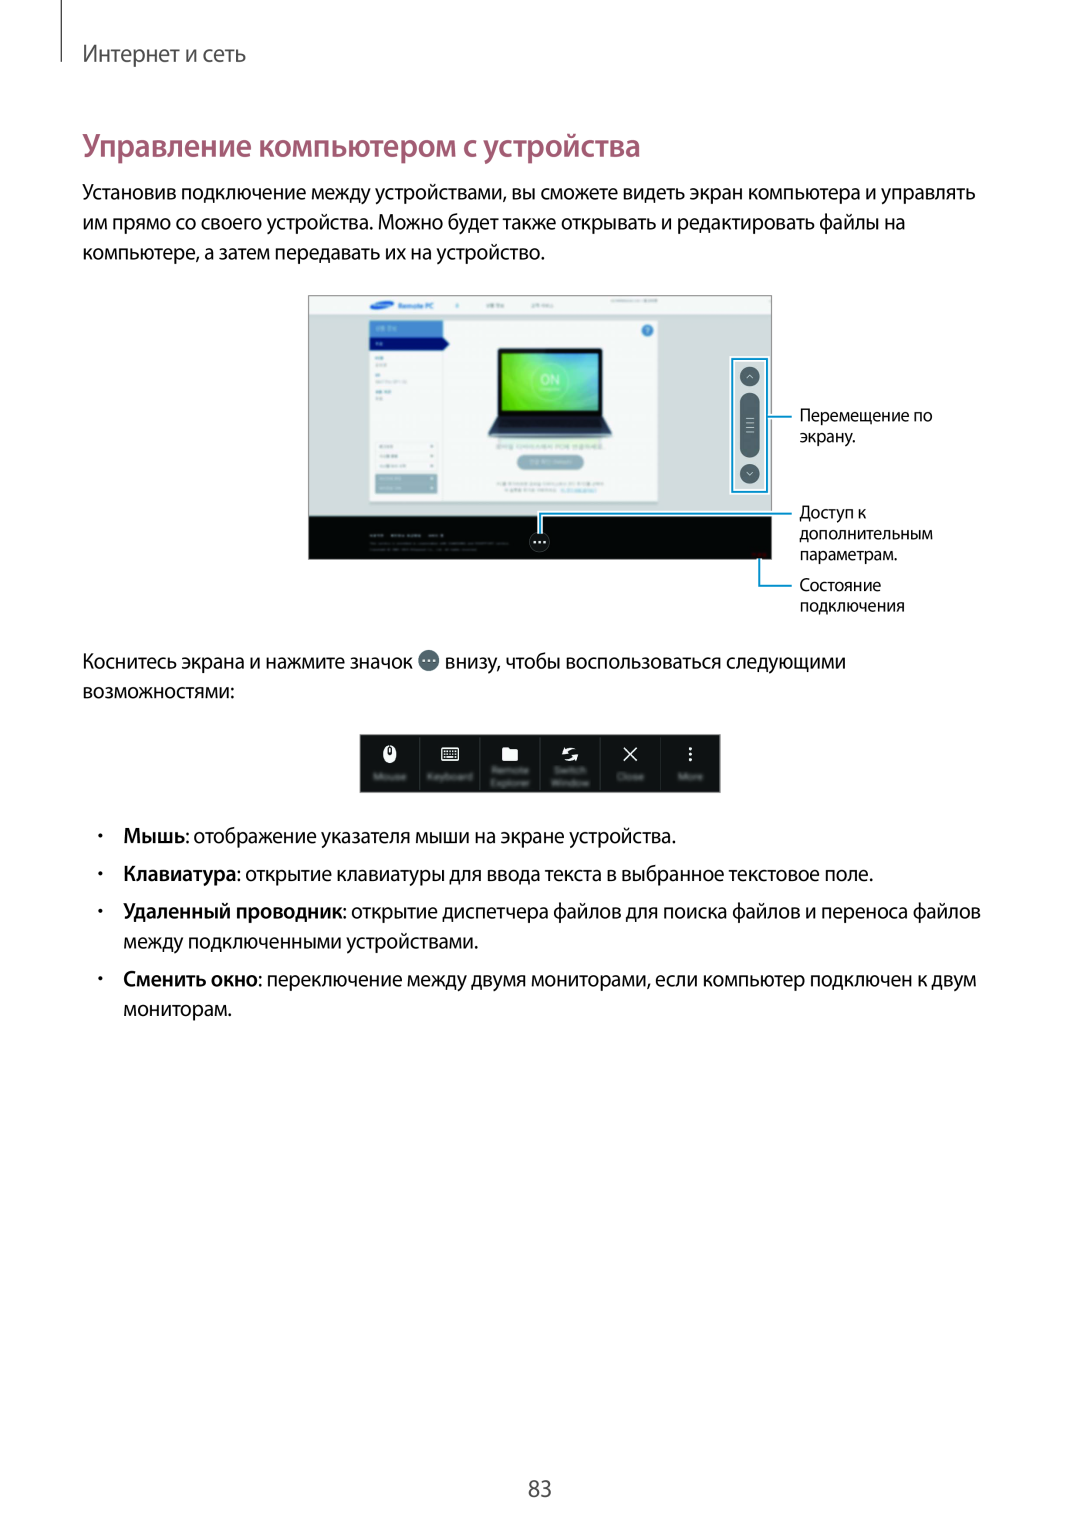 Samsung SM-P9000ZKASER, SM-P9000ZKASEB, SM-P9000ZWASEB, SM-P9000ZWASER Управление компьютером с устройства, Интернет и сеть 